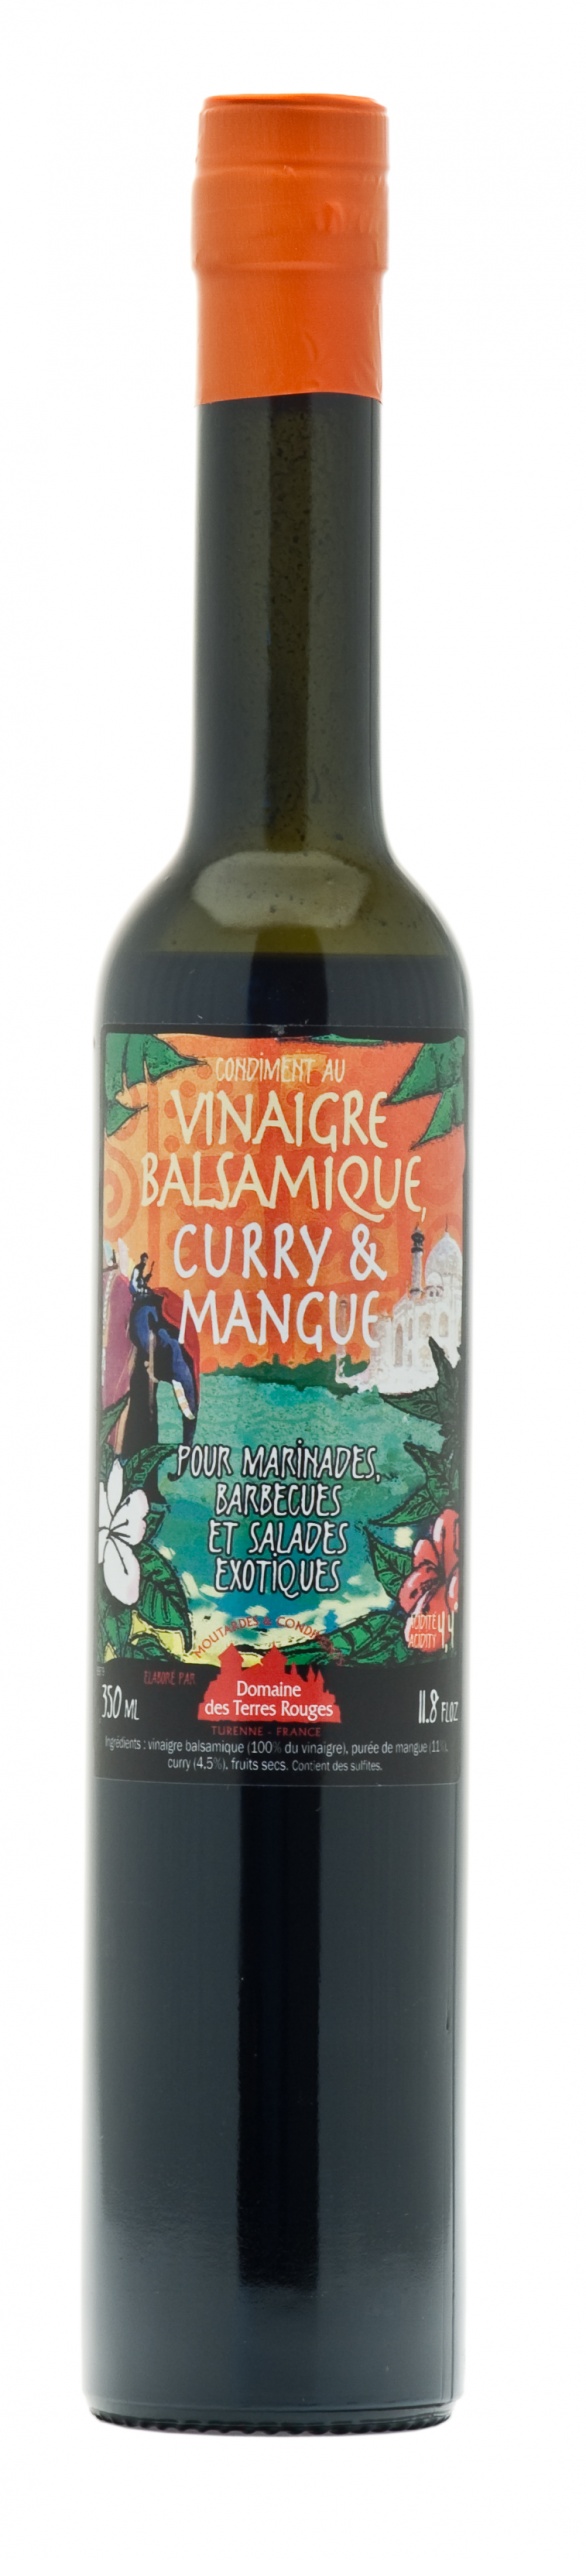 Vinaigre Balsamique Curry et Mangue